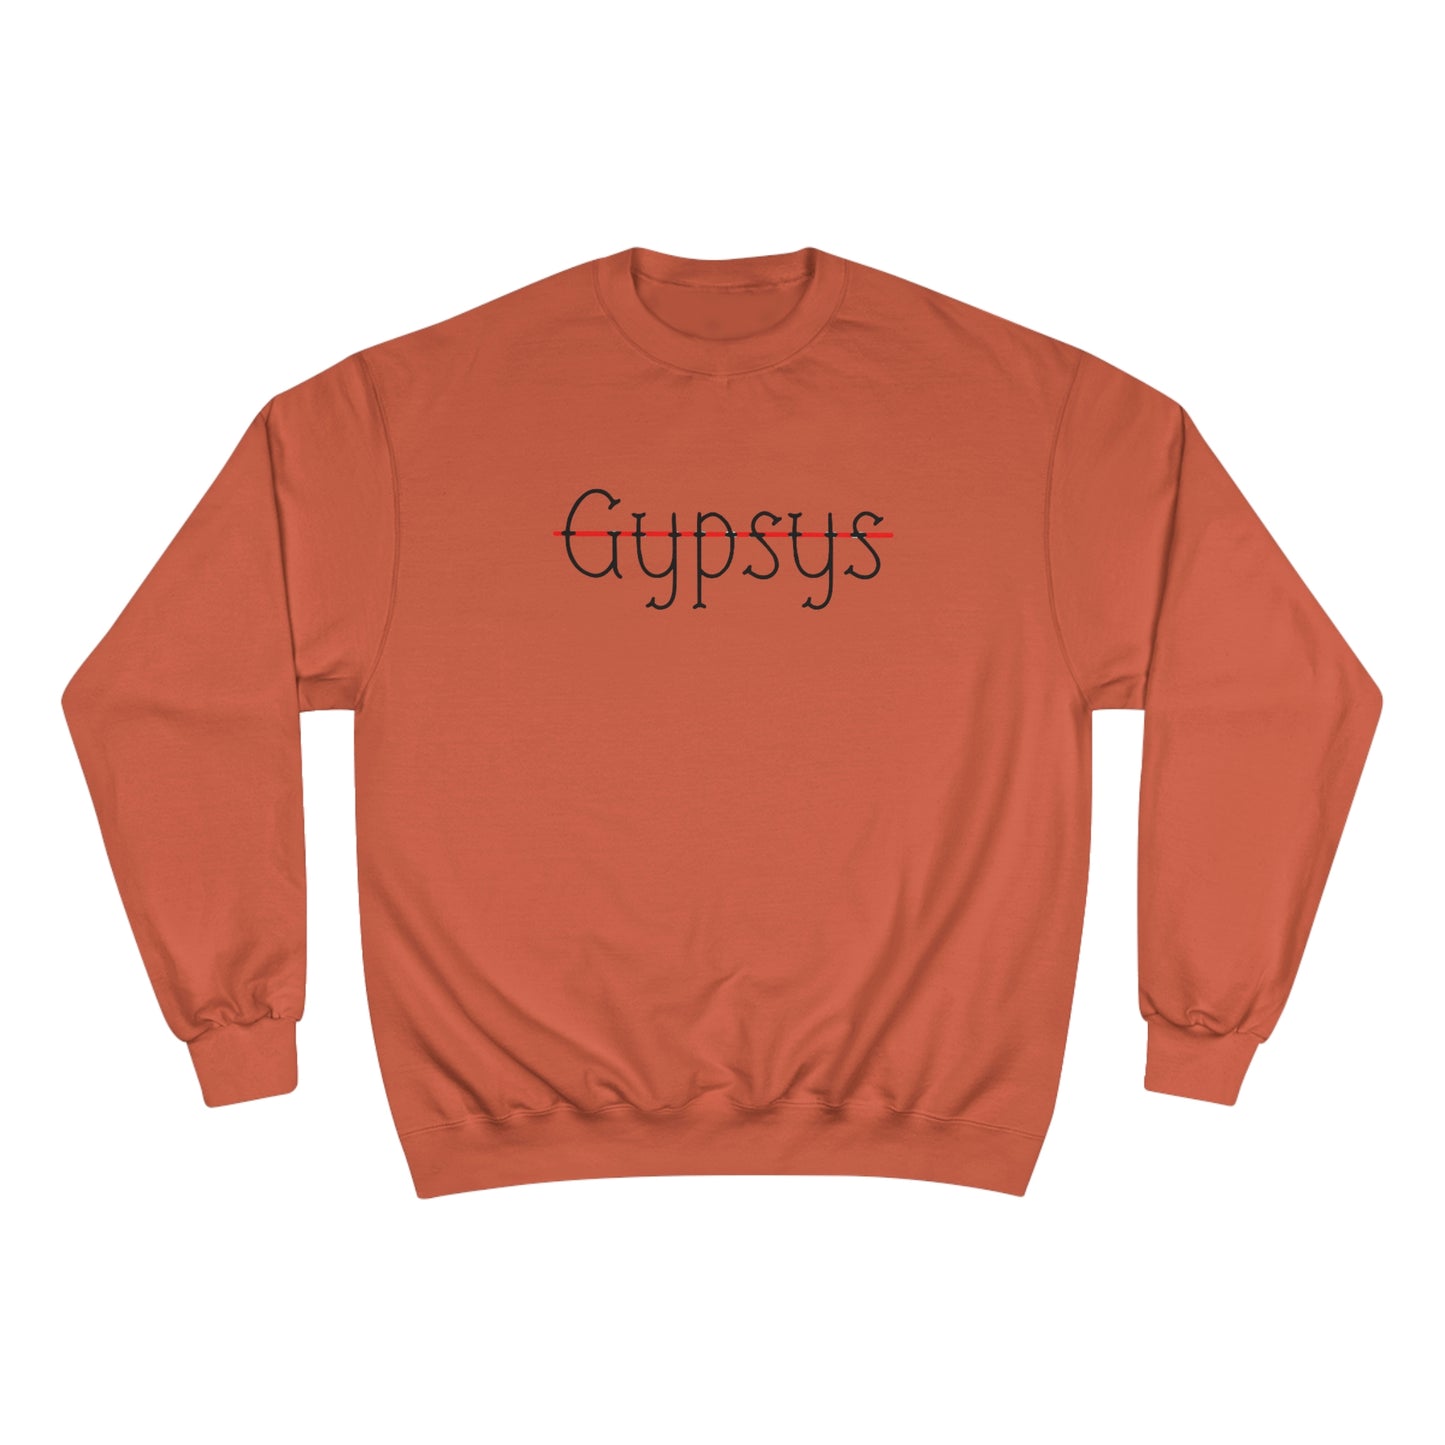 Unisex Champion Crewneck Sweatshirt | Gypsy's Red Rose Gypsy Lady (by @ryseart)